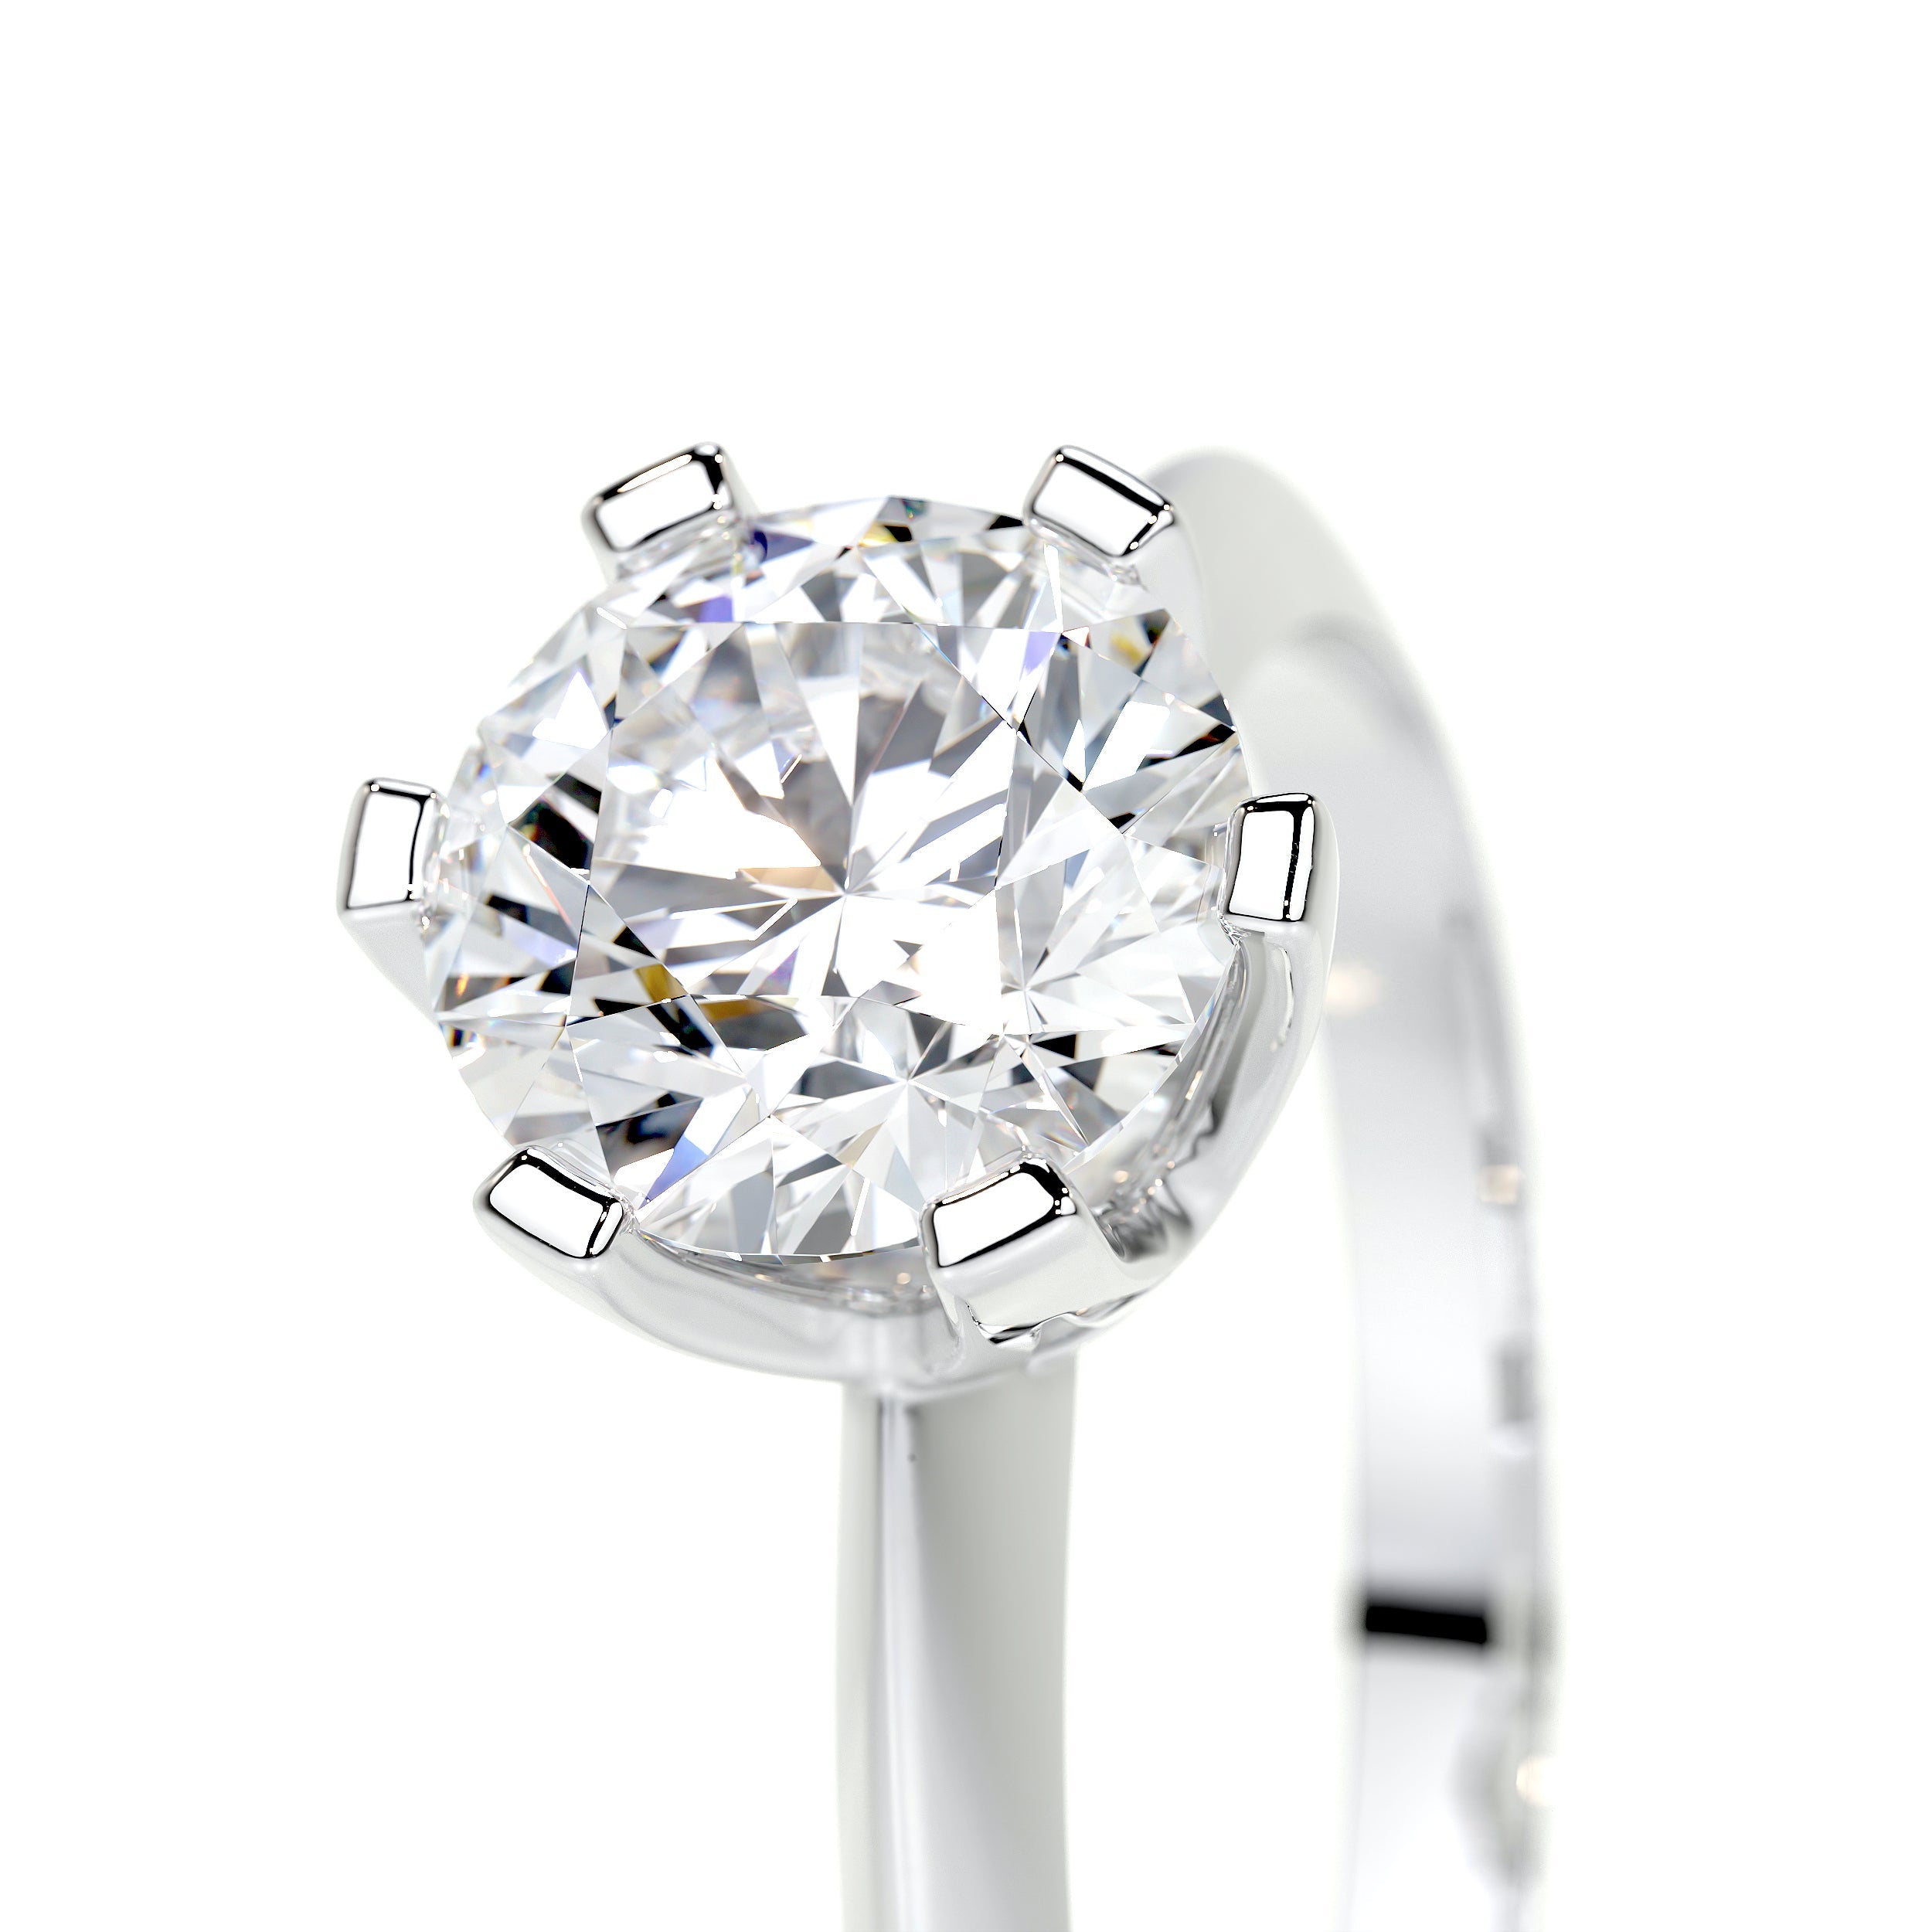 Alexis Lab Grown Diamond Ring   (1.25 Carat) -18K White Gold